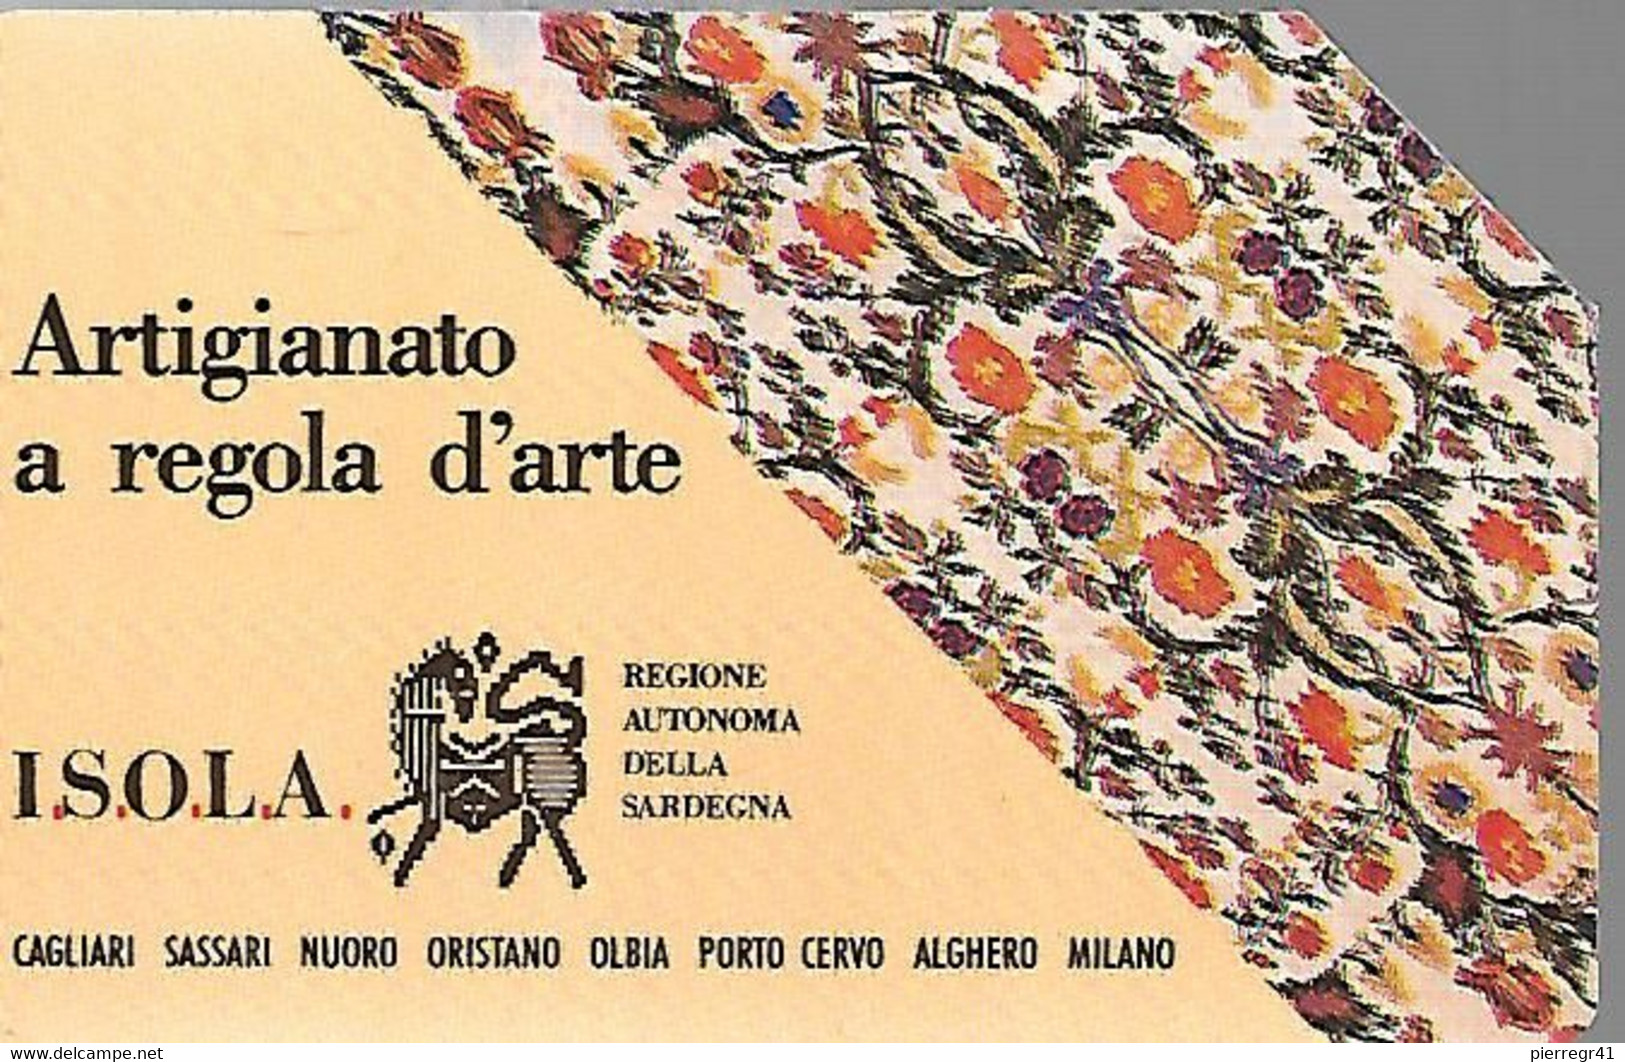 CARTE -ITALIE-Serie Pubblishe Figurate-Catalogue Golden-10000L-ISOLA ARTIGIANATO-N°138-30/06/93-Pik -Utilisé-TBE-RARE - Publiques Précurseurs